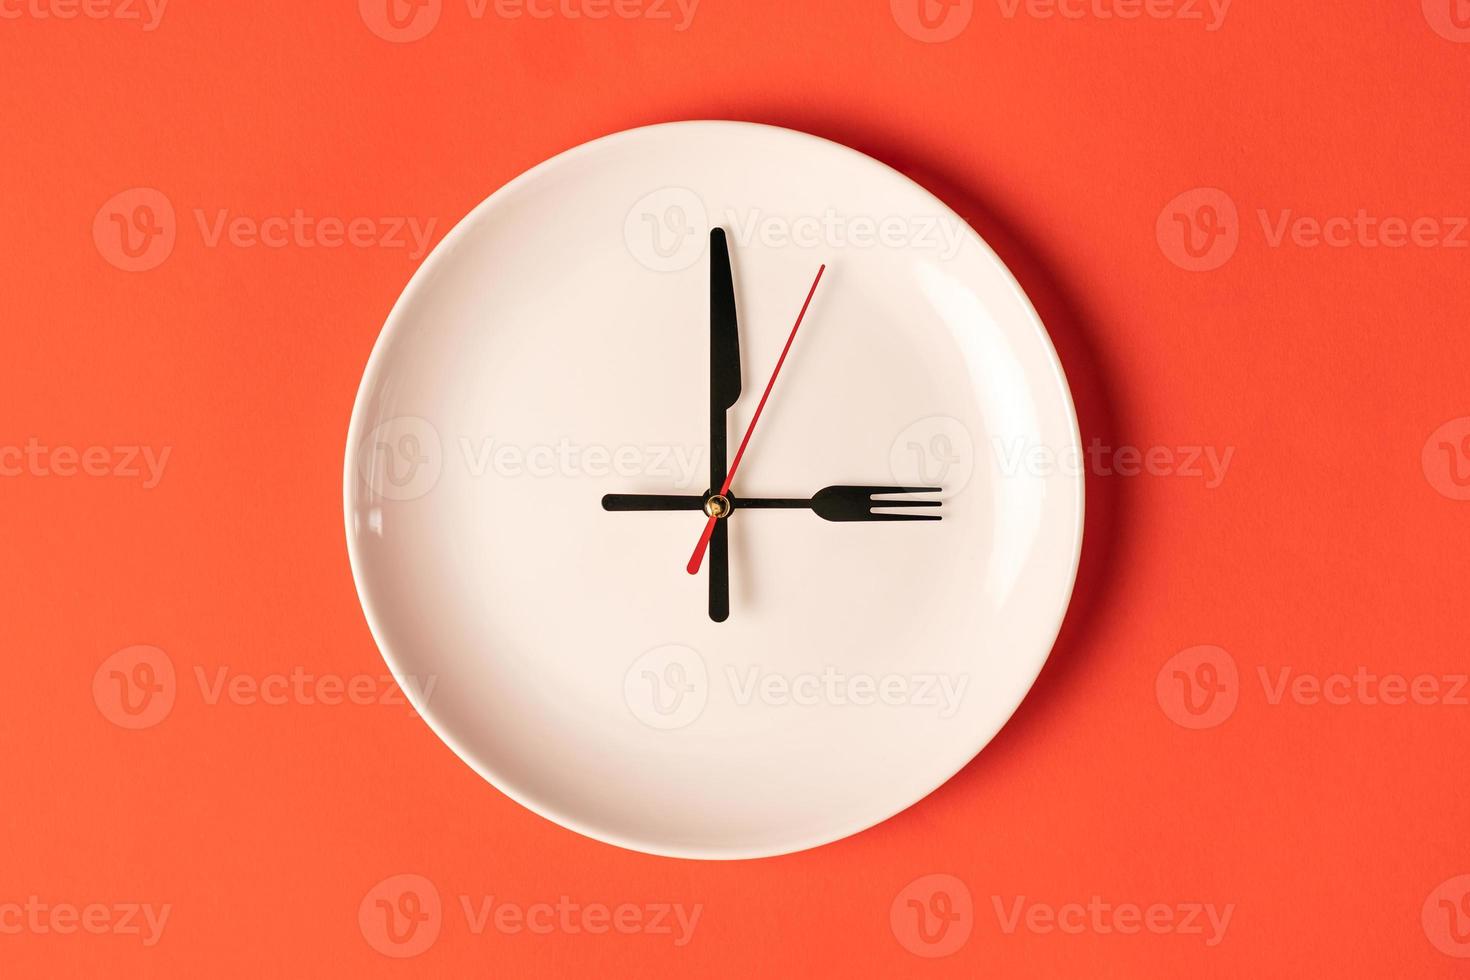 plato con manecillas de hora en forma de tenedor y cuchillo, hora de comer. foto